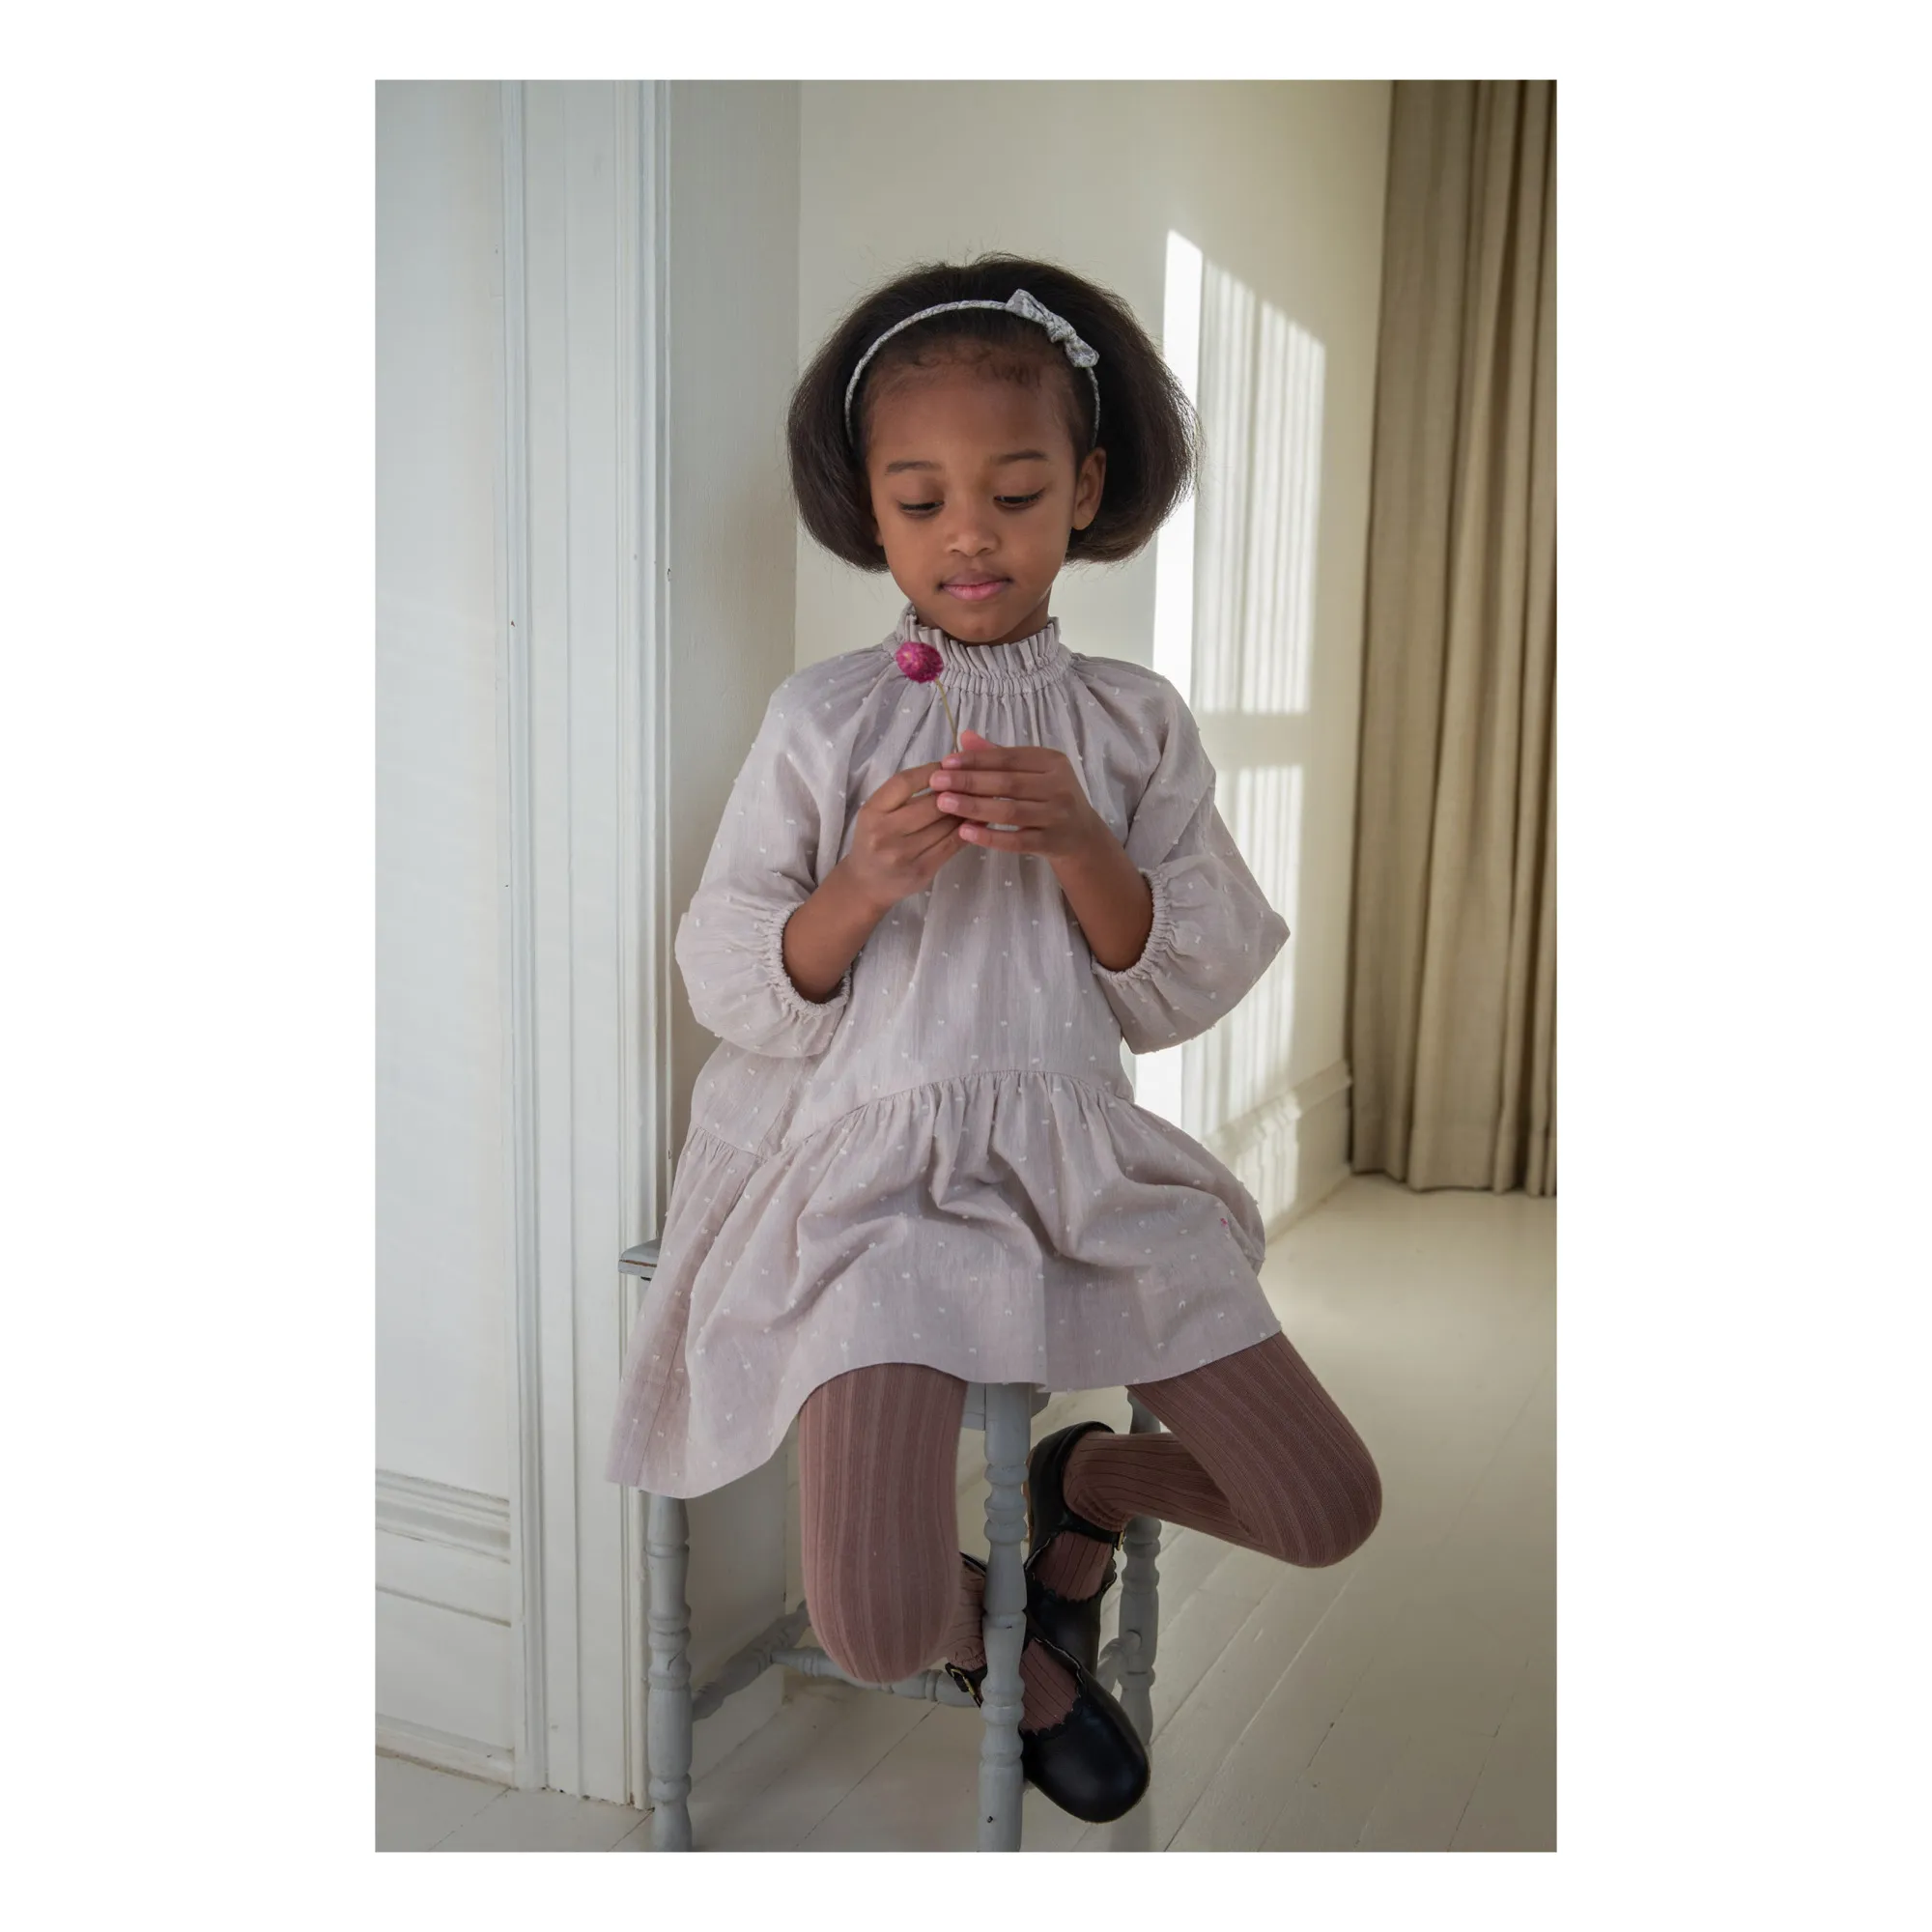 新規購入 soor Kids ploom - Edith Dress Dress, Leaf Linen Print 